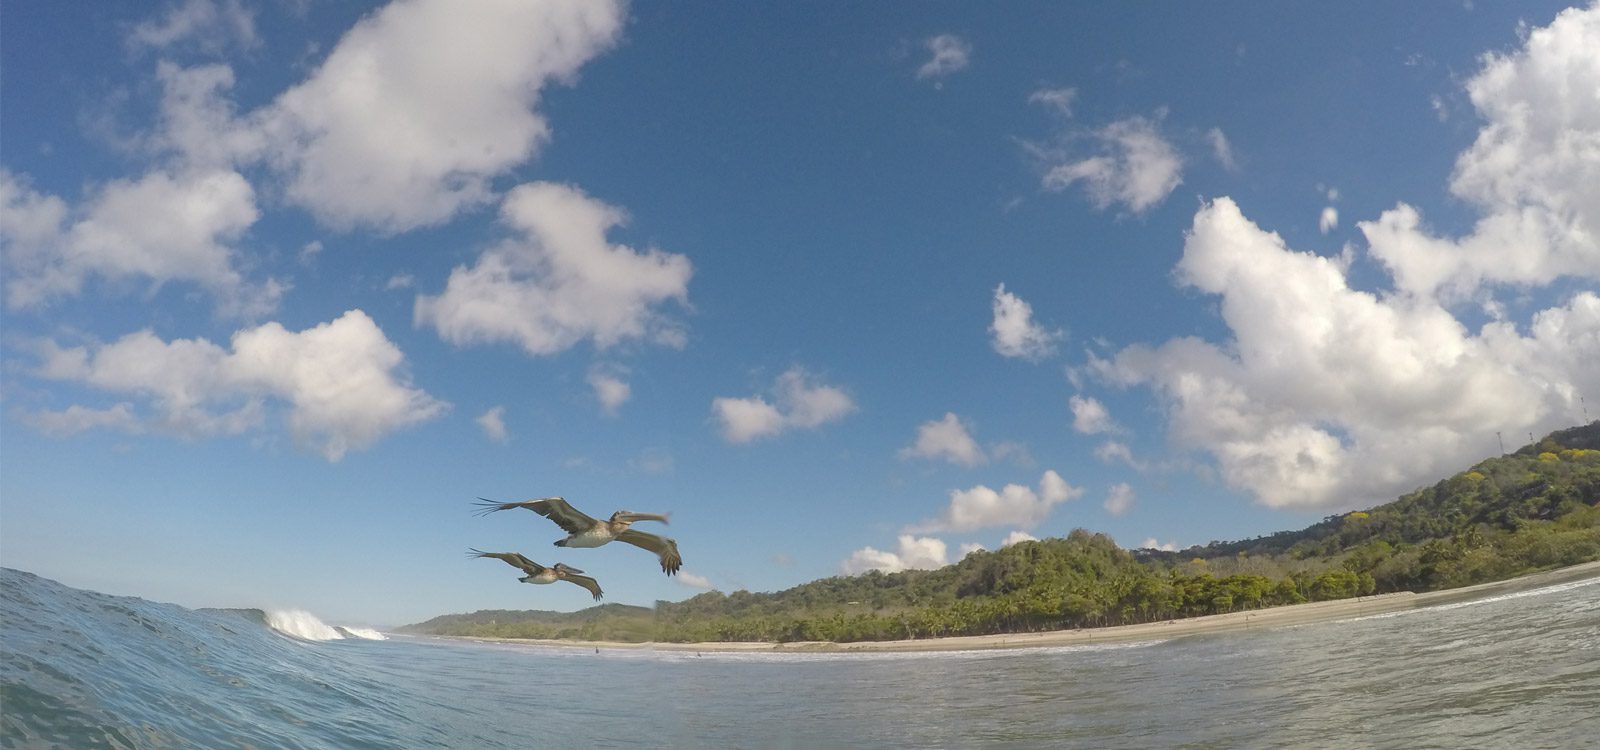 Birds flying over Pura Vida Costa Rica Surf Camp